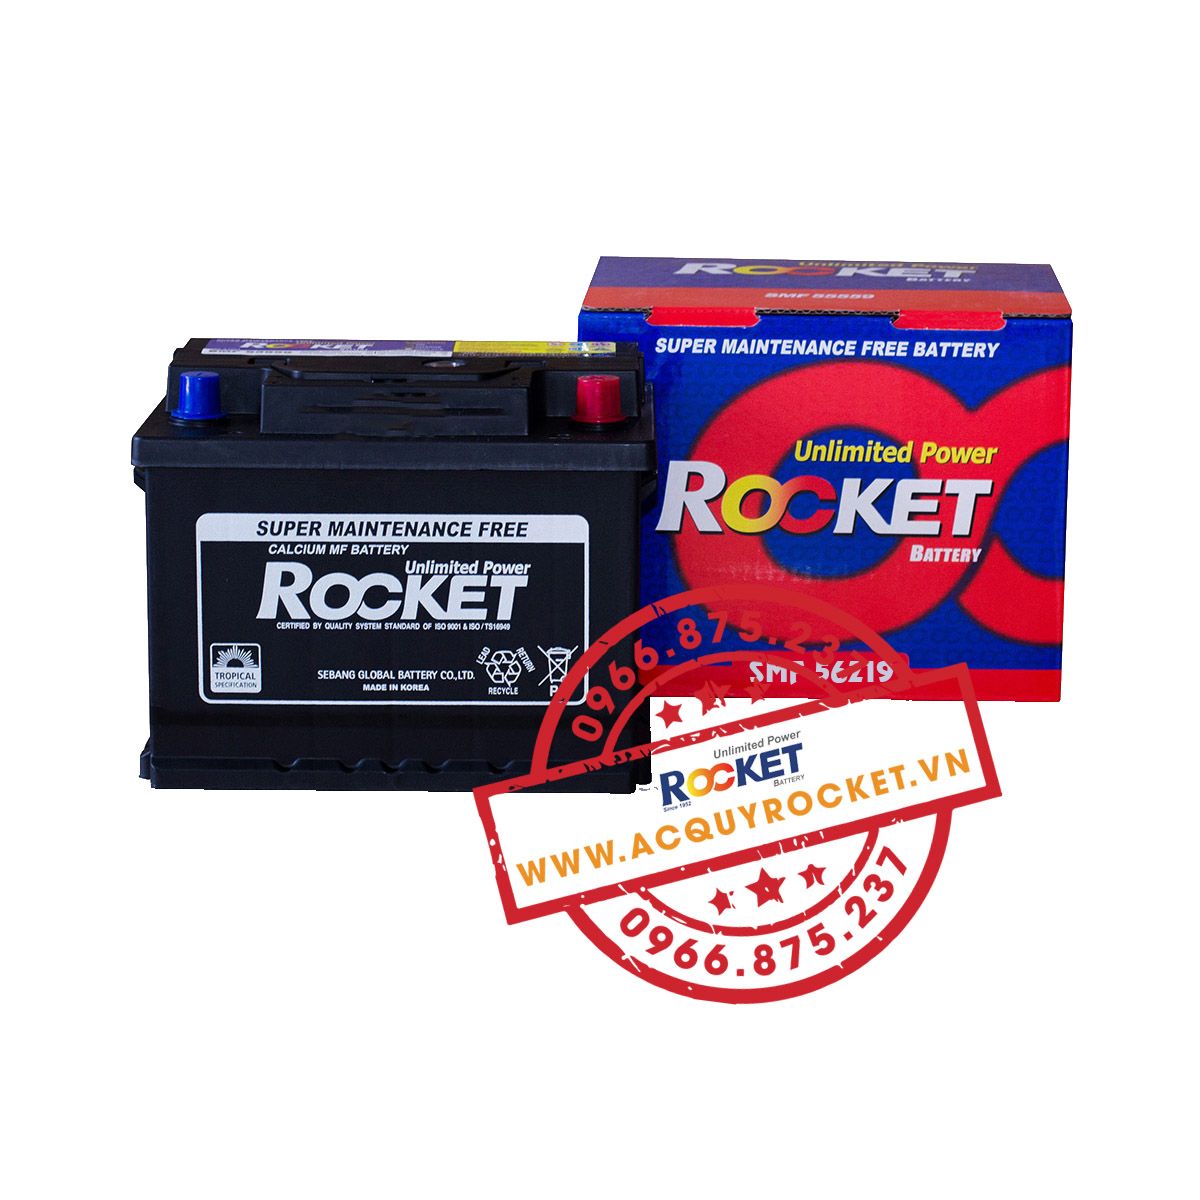 Bình ắc quy Rocket SMF 56219 (12V-62Ah) giá tốt